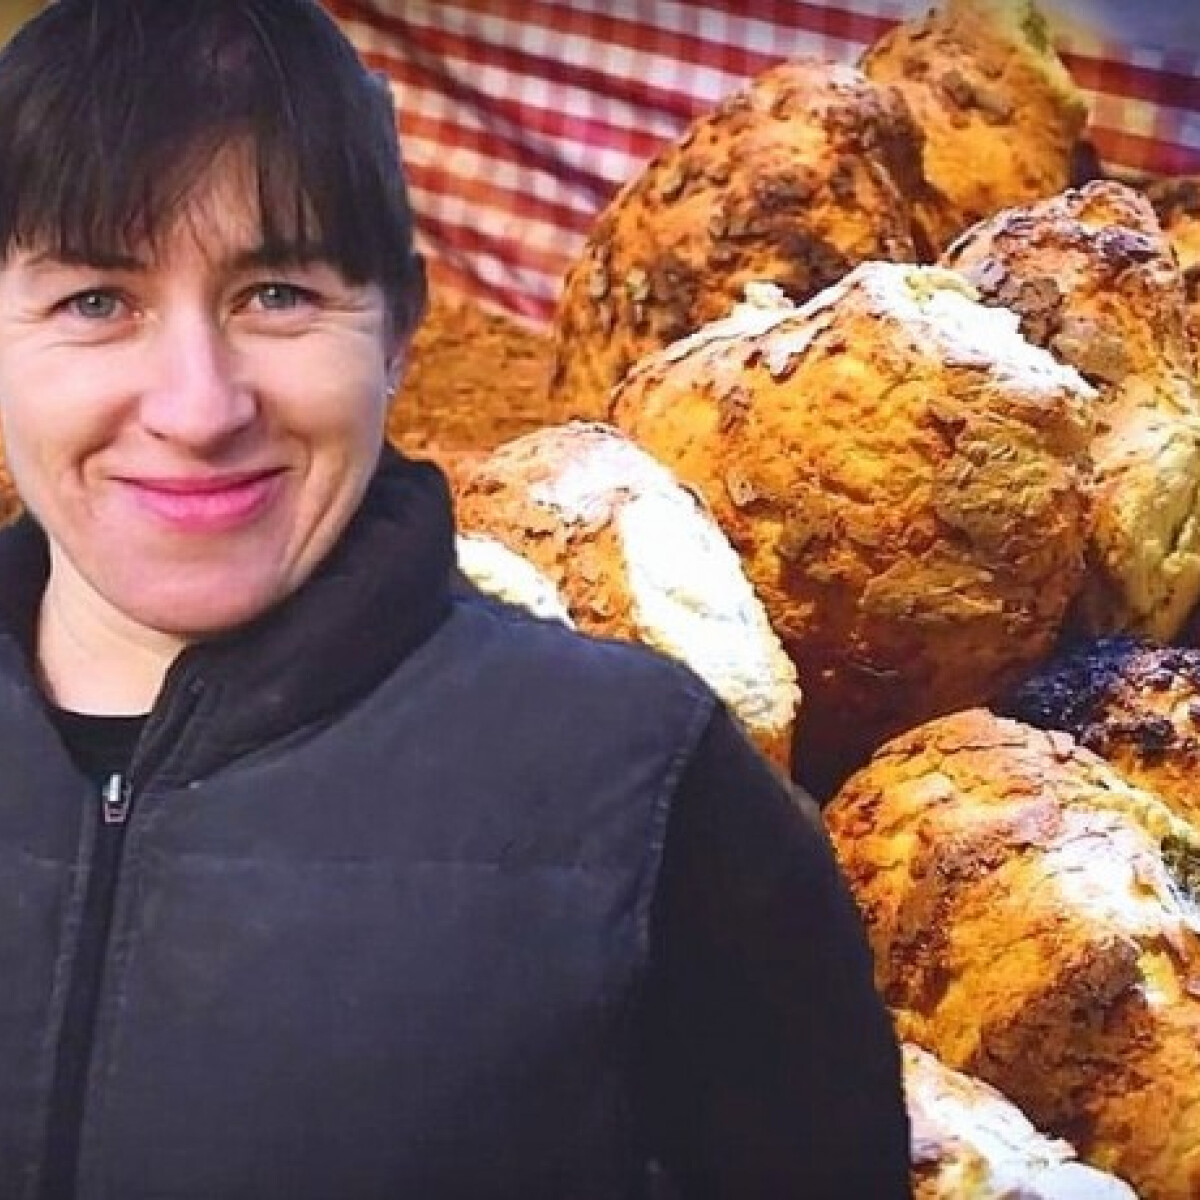 Pityókás kenyeret készített nekünk egy erdélyi hölgy - VIDEÓ